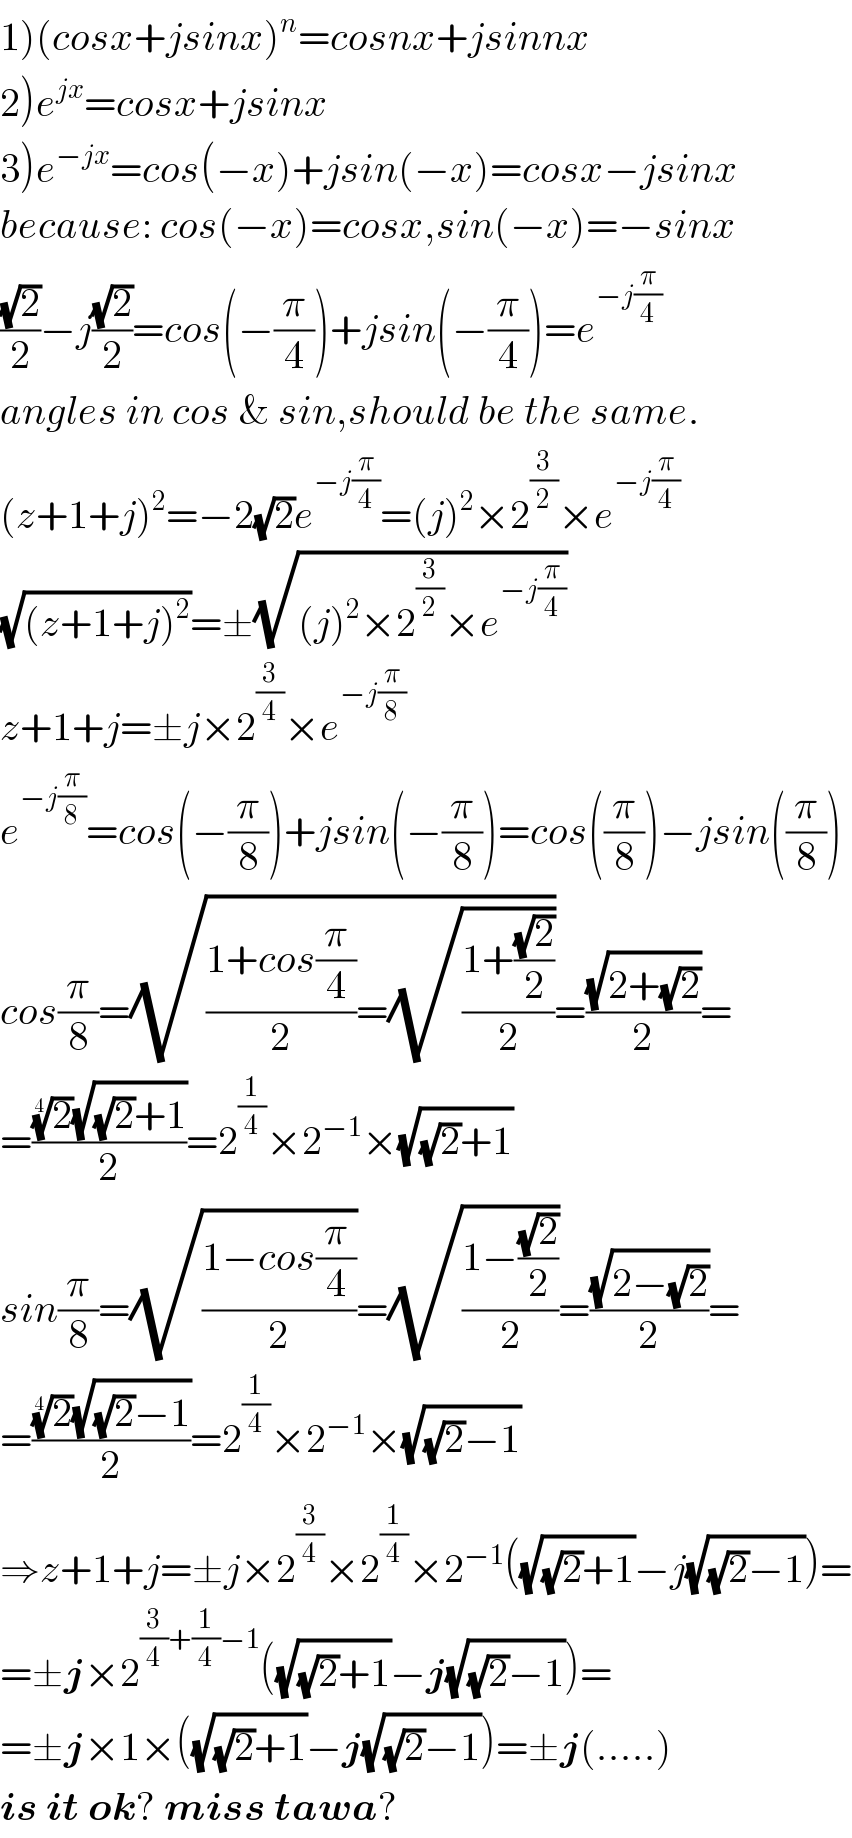 1)(cosx+jsinx)^n =cosnx+jsinnx  2)e^(jx) =cosx+jsinx  3)e^(−jx) =cos(−x)+jsin(−x)=cosx−jsinx  because: cos(−x)=cosx,sin(−x)=−sinx  ((√2)/2)−j((√2)/2)=cos(−(π/4))+jsin(−(π/4))=e^(−j(π/4))   angles in cos & sin,should be the same.  (z+1+j)^2 =−2(√2)e^(−j(π/4)) =(j)^2 ×2^(3/2) ×e^(−j(π/4))   (√((z+1+j)^2 ))=±(√((j)^2 ×2^(3/2) ×e^(−j(π/4)) ))  z+1+j=±j×2^(3/4) ×e^(−j(π/8))   e^(−j(π/8)) =cos(−(π/8))+jsin(−(π/8))=cos((π/8))−jsin((π/8))  cos(π/8)=(√(((1+cos(π/4))/2)=(√((1+((√2)/2))/2))))=((√(2+(√2)))/2)=  =(((2)^(1/4) (√((√2)+1)))/2)=2^(1/4) ×2^(−1) ×(√((√2)+1))  sin(π/8)=(√((1−cos(π/4))/2))=(√((1−((√2)/2))/2))=((√(2−(√2)))/2)=  =(((2)^(1/4) (√((√2)−1)))/2)=2^(1/4) ×2^(−1) ×(√((√2)−1))  ⇒z+1+j=±j×2^(3/4) ×2^(1/4) ×2^(−1) ((√((√2)+1))−j(√((√2)−1)))=  =±j×2^((3/4)+(1/4)−1) ((√((√2)+1))−j(√((√2)−1)))=  =±j×1×((√((√2)+1))−j(√((√2)−1)))=±j(.....)   is it ok? miss tawa?  